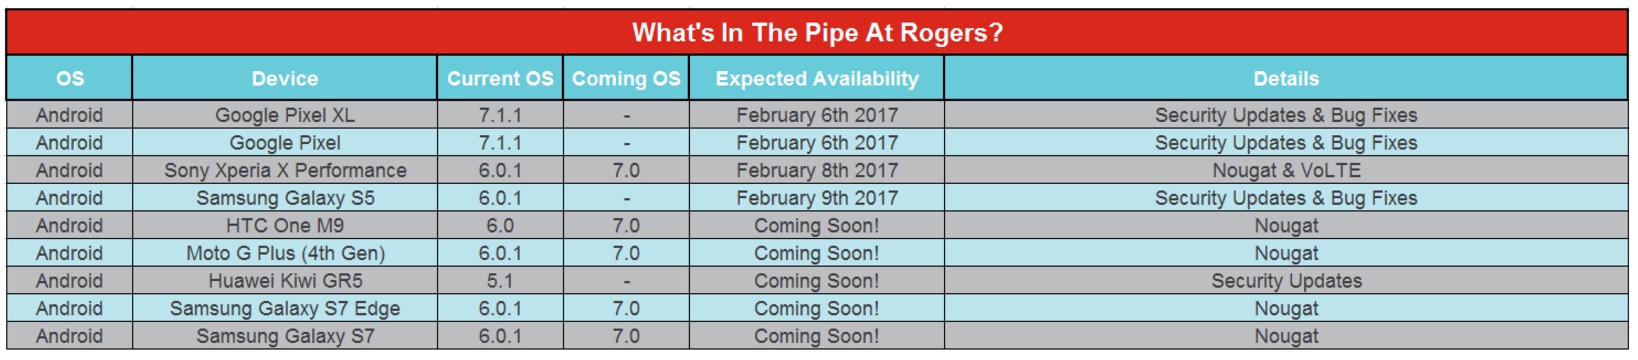 Rogers February Update Schedule